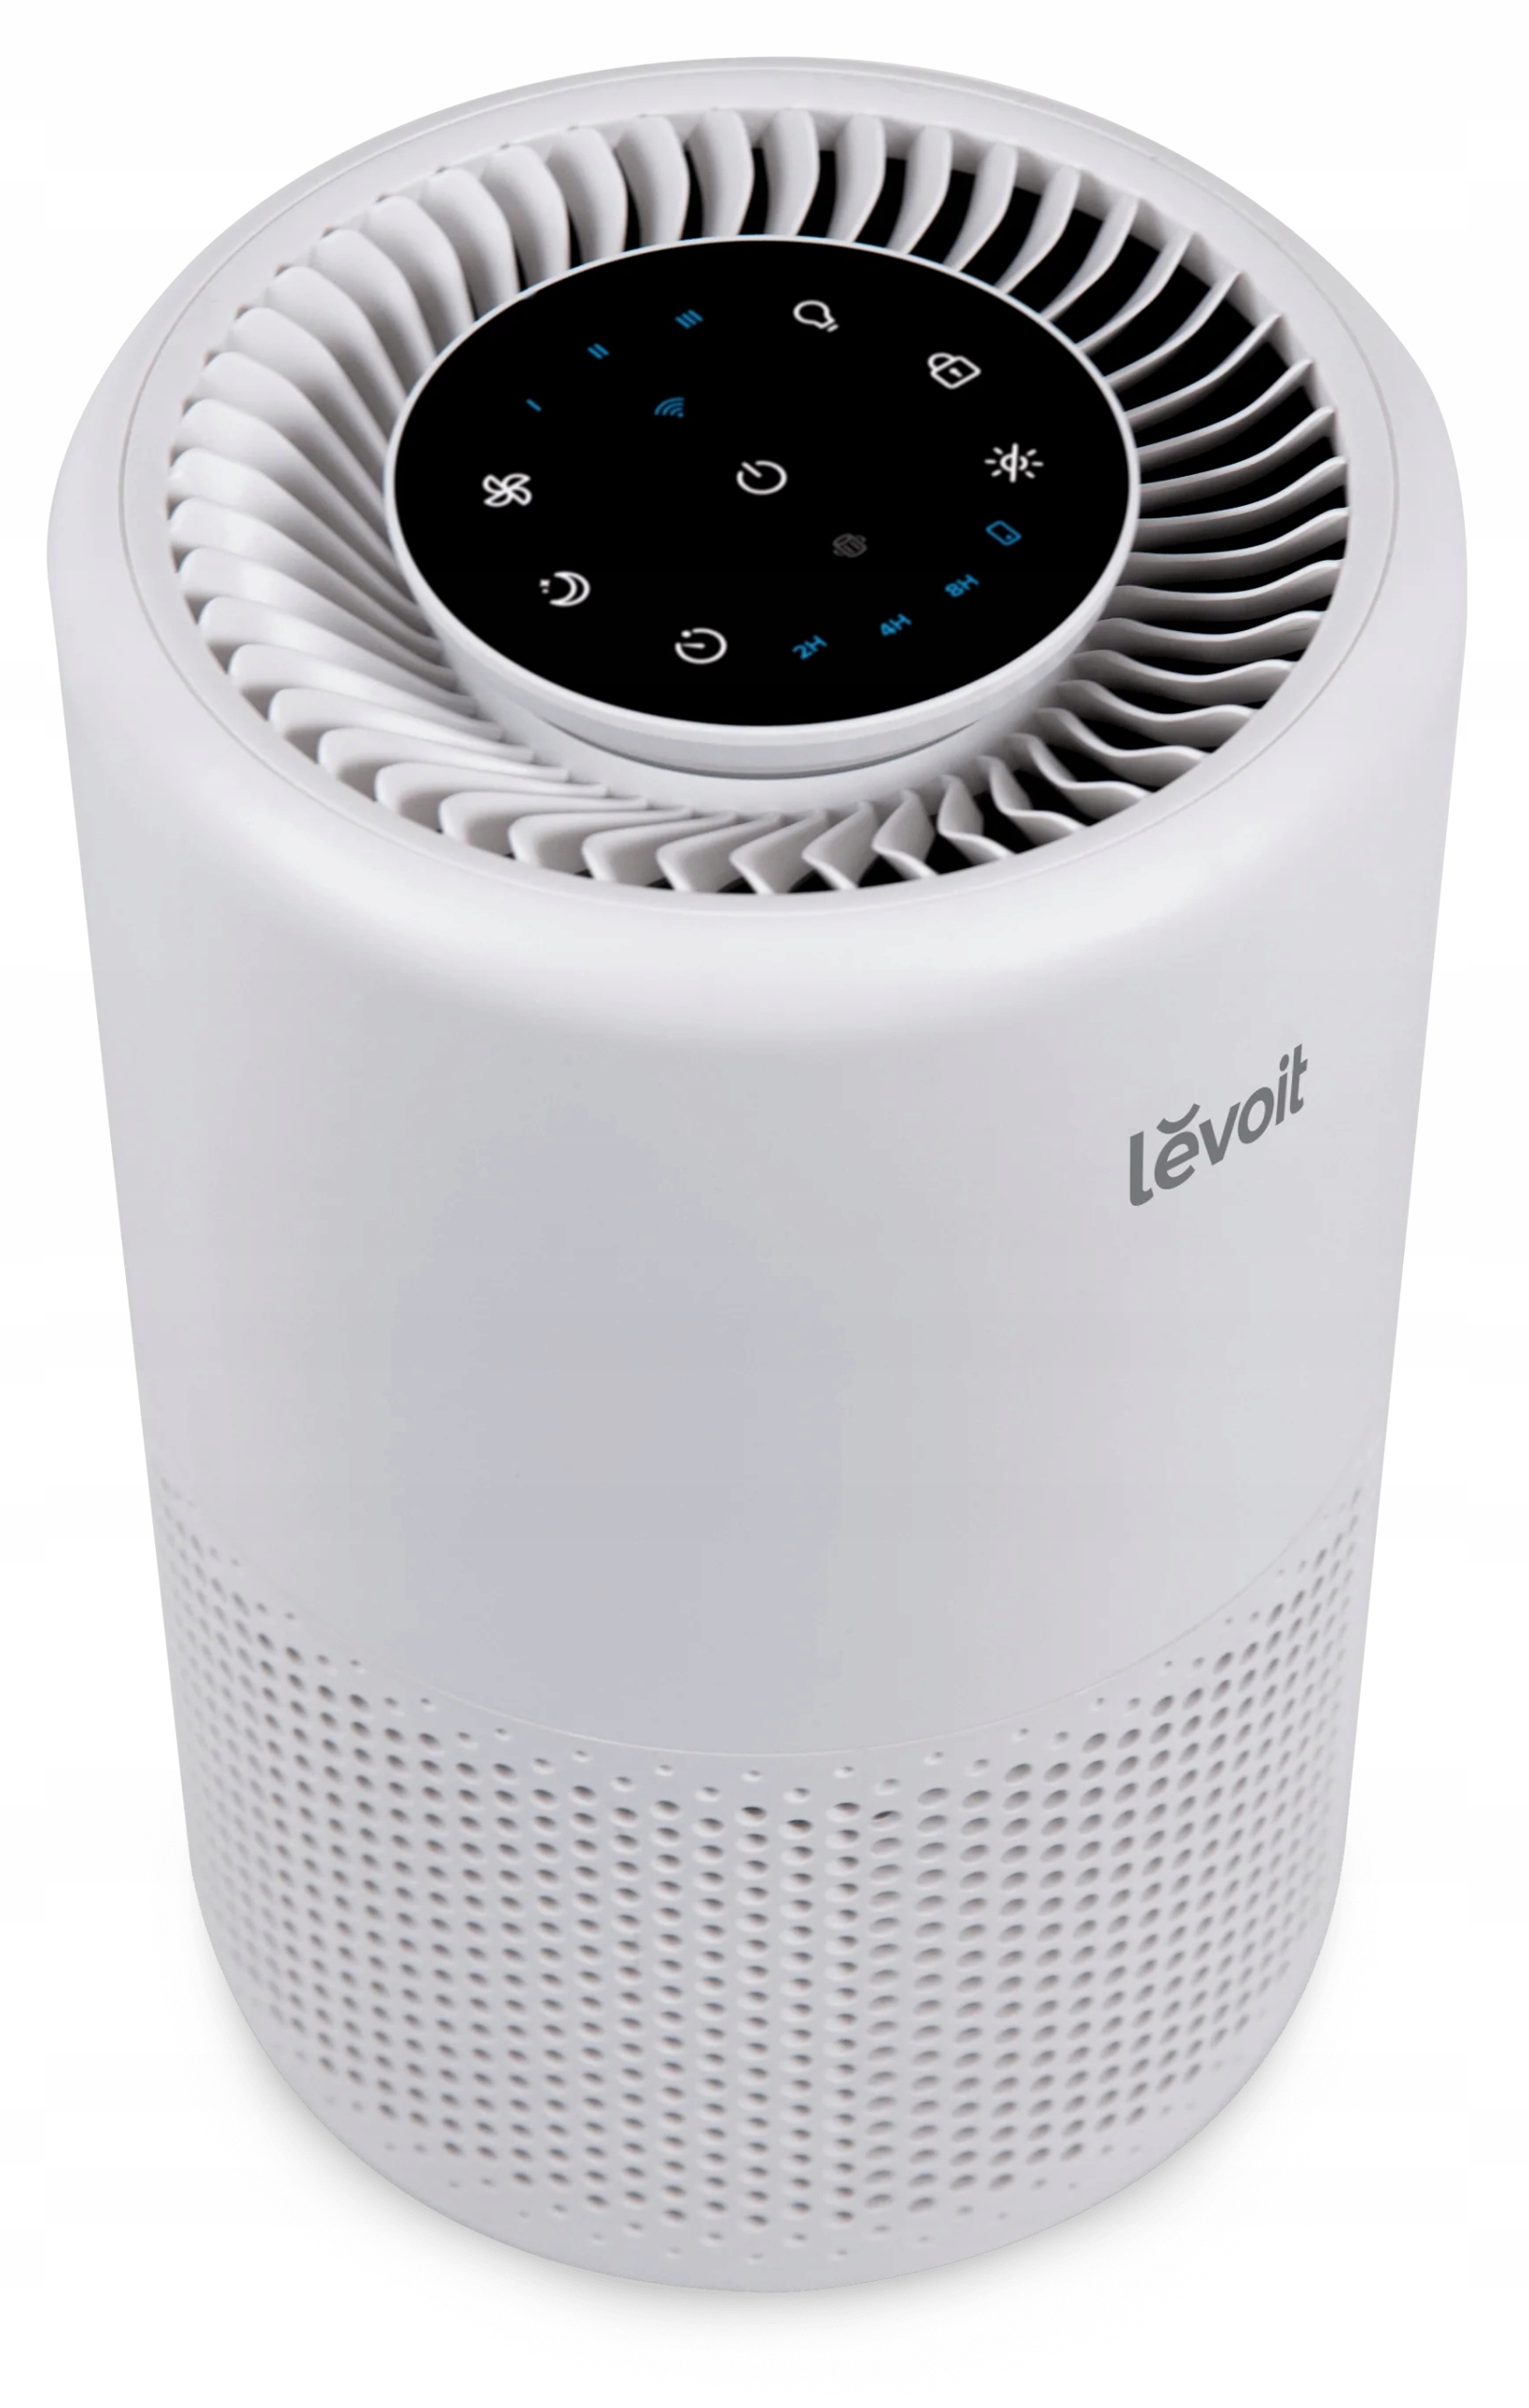 Oczyszczacz powietrza Levoit LV-H135 45W (J5680UBXZO) • Cena, Opinie  12522997905 •